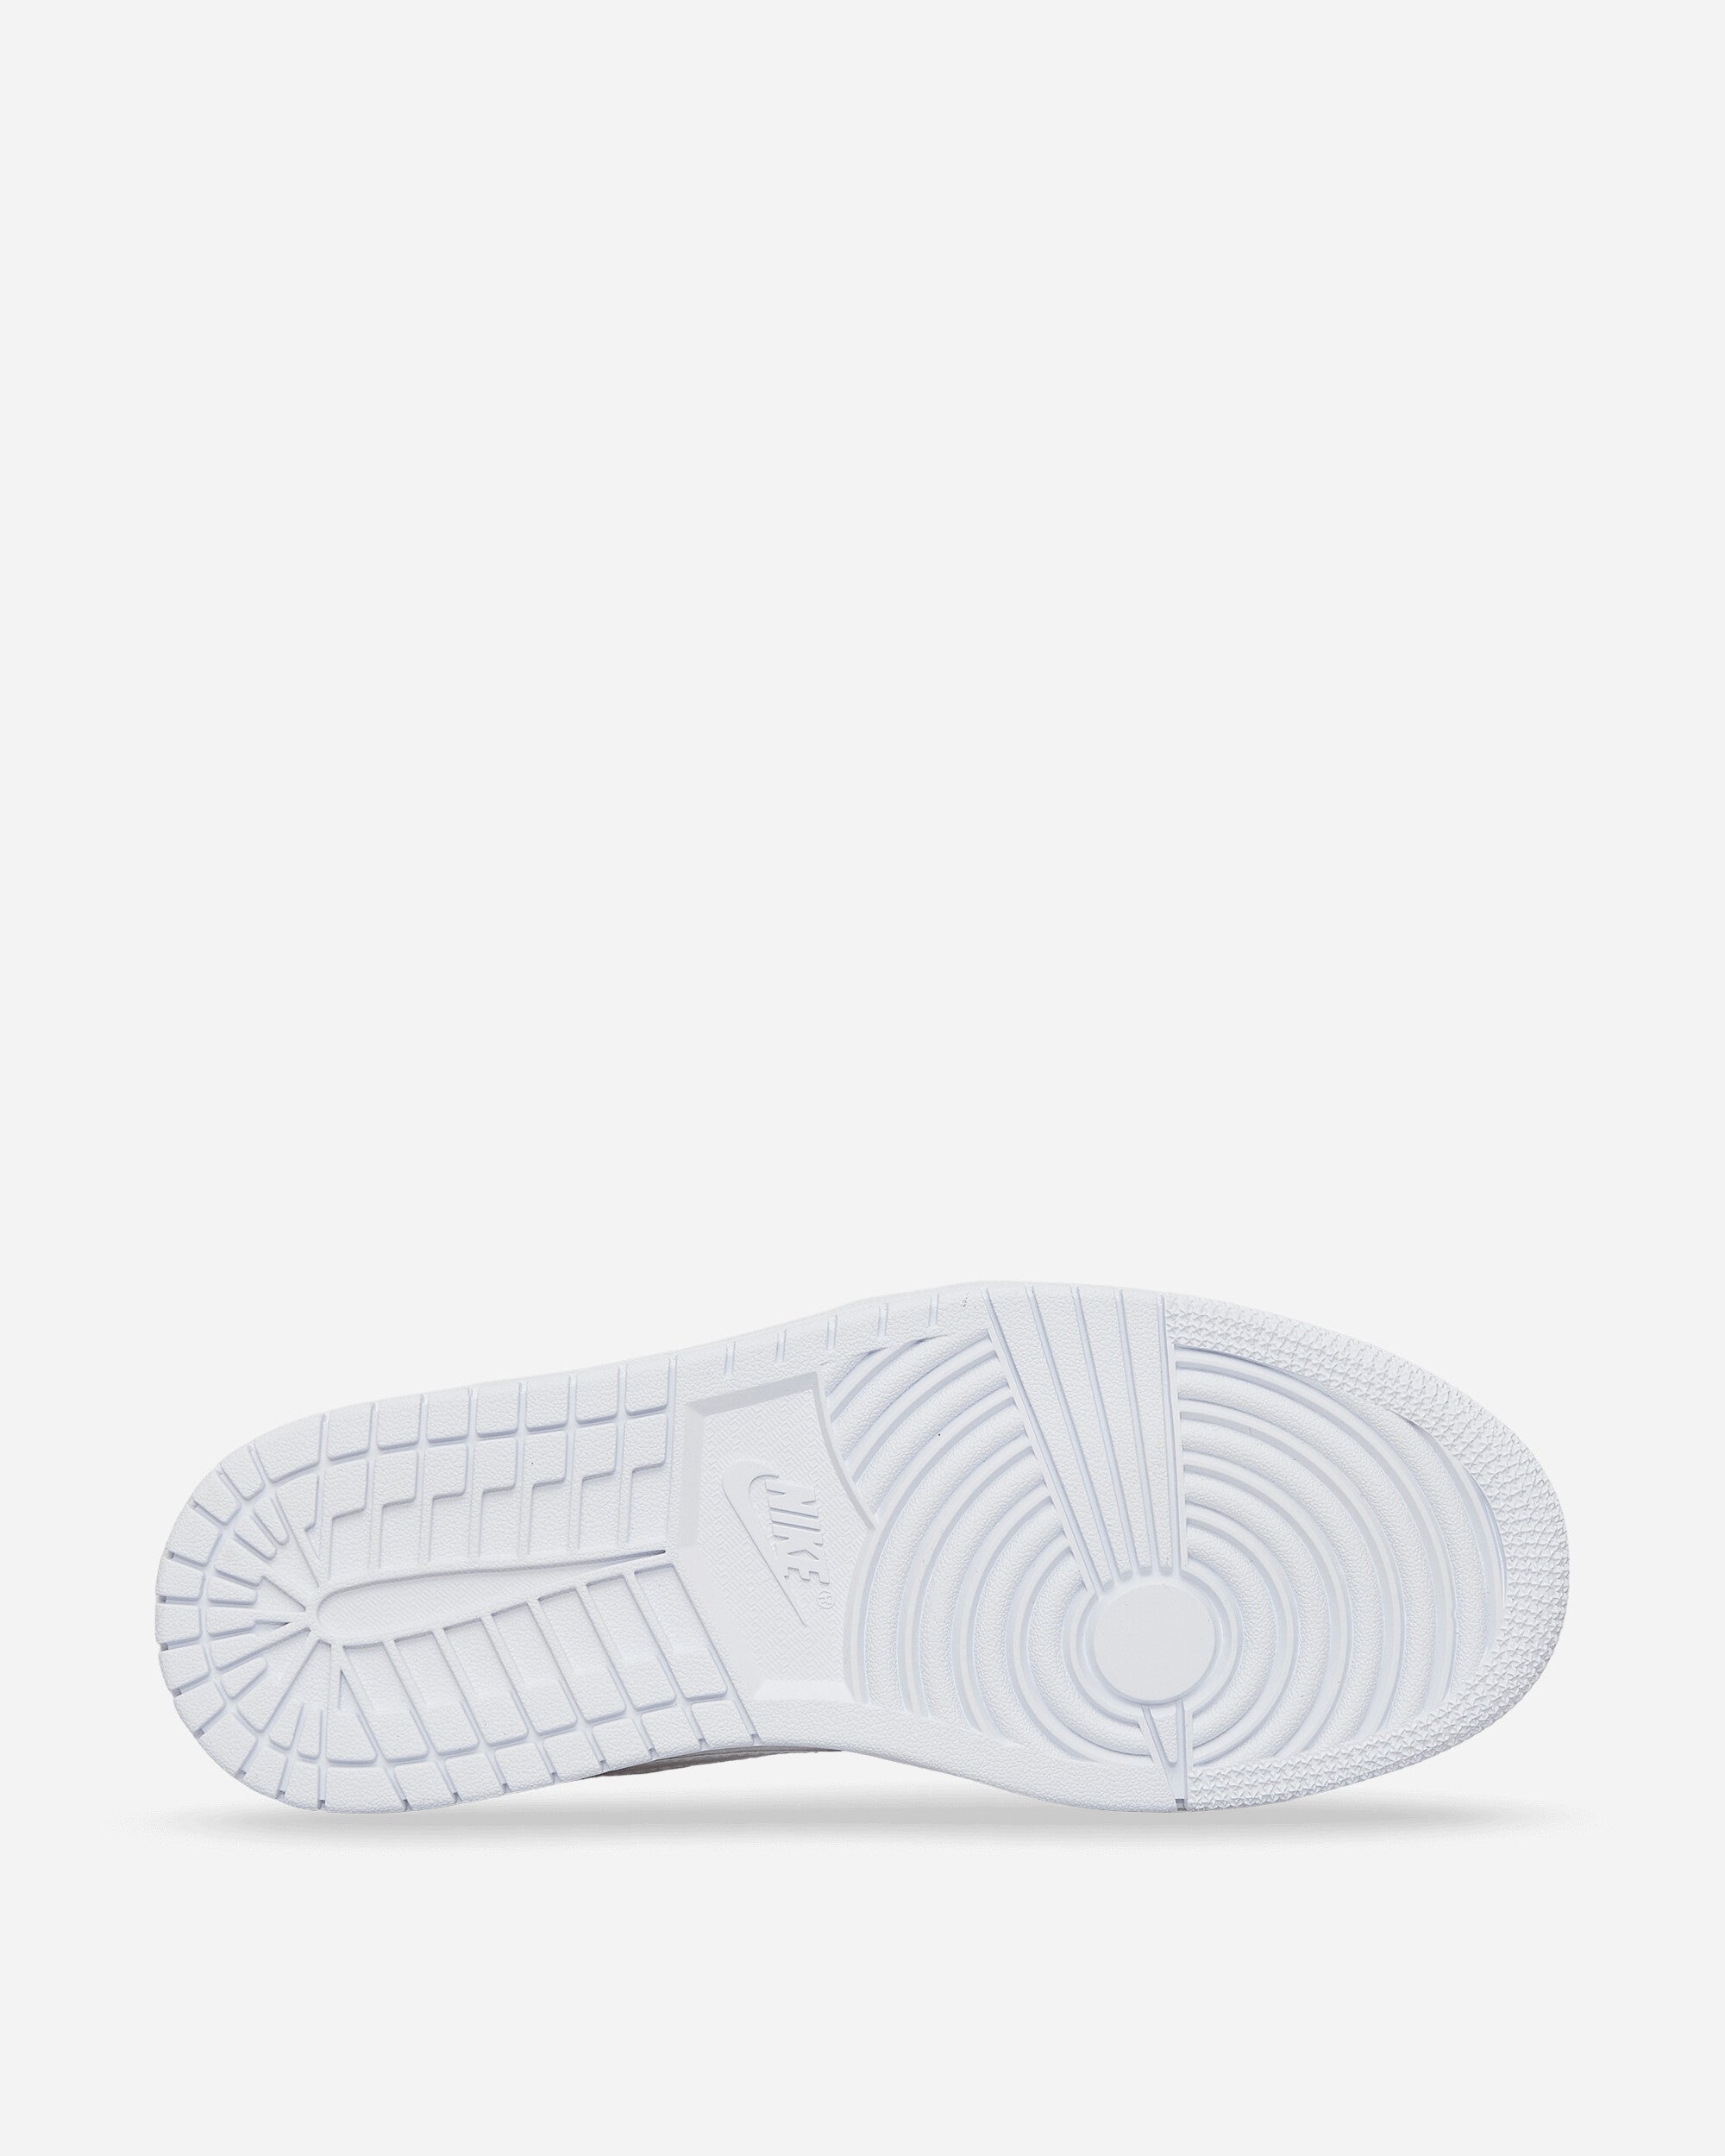 Nike Jordan Wmns Air Jordan 1 Low White/White Sneakers Low DV0990-111